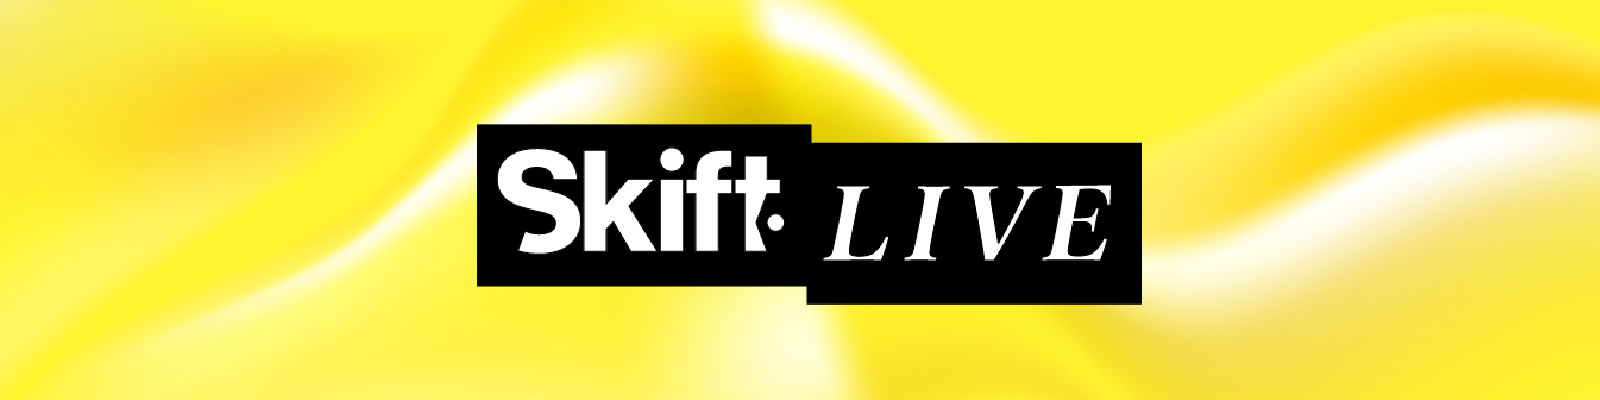 general _Skift live banner 1